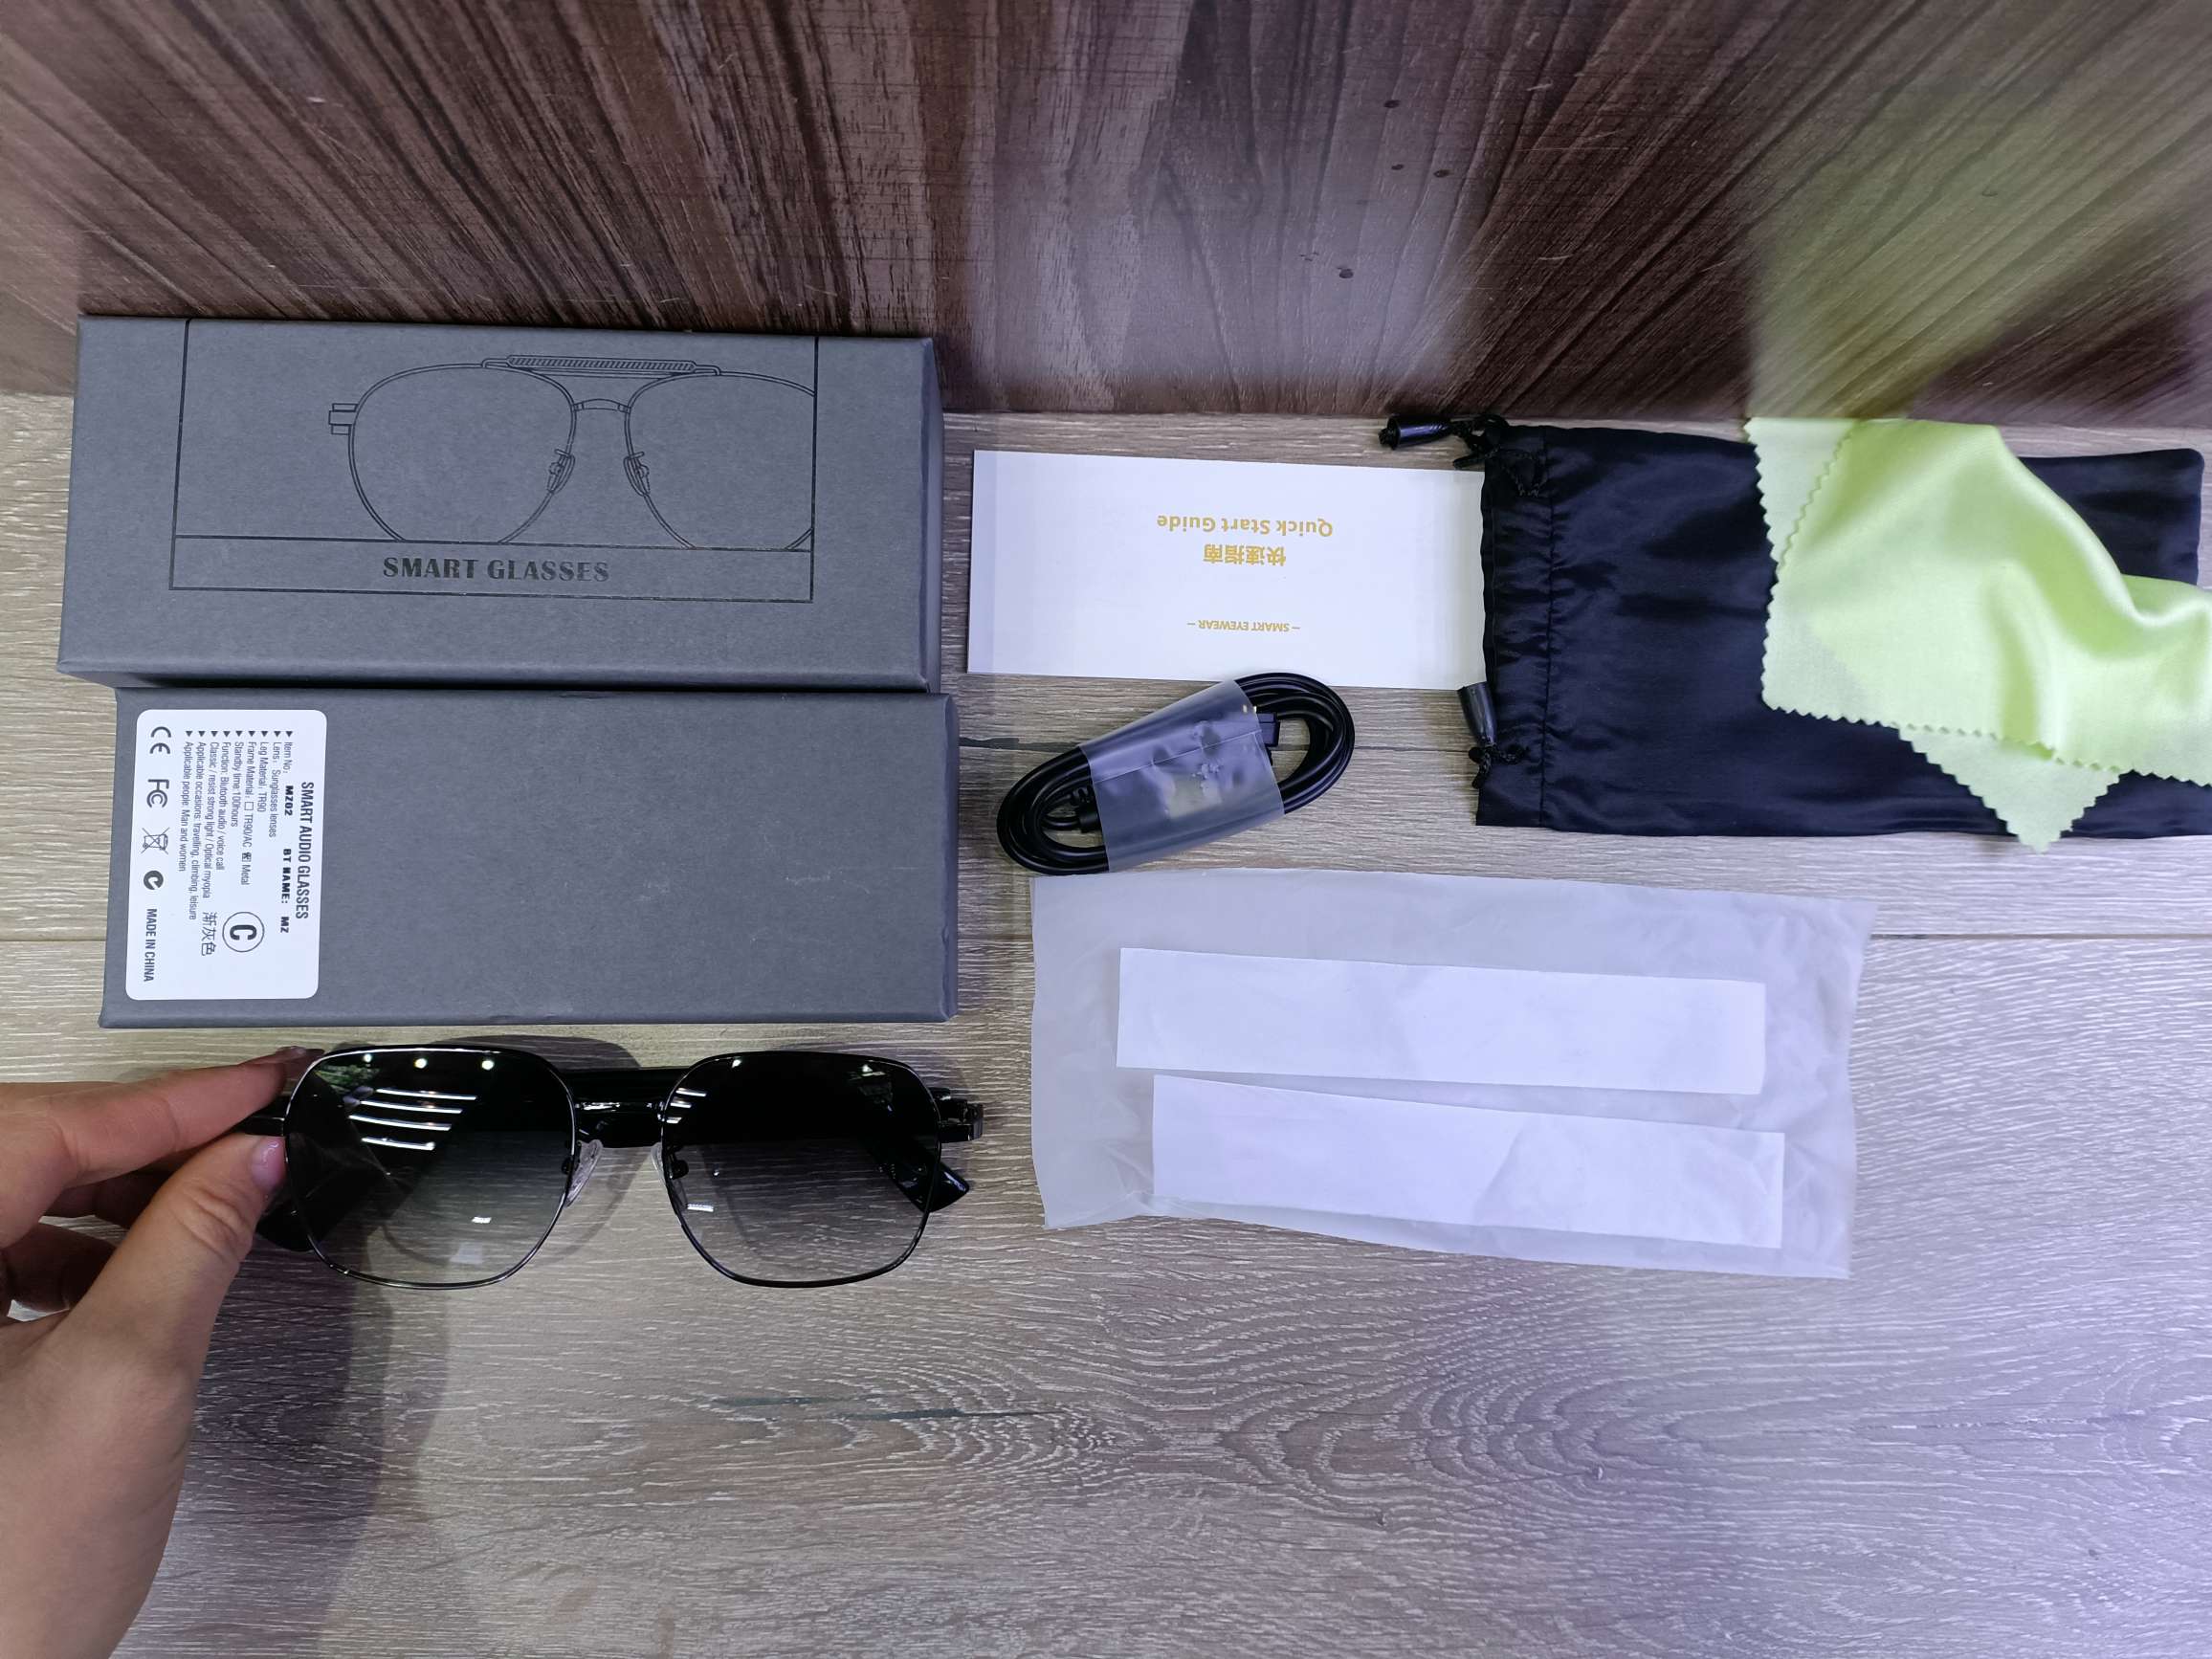 MZ02蓝牙眼镜智能眼镜听歌通话墨镜防UV400紫外线 支持快充智能蓝牙紫外线太阳镜通话音乐骑行户外多功能打电话时尚眼镜详情图4